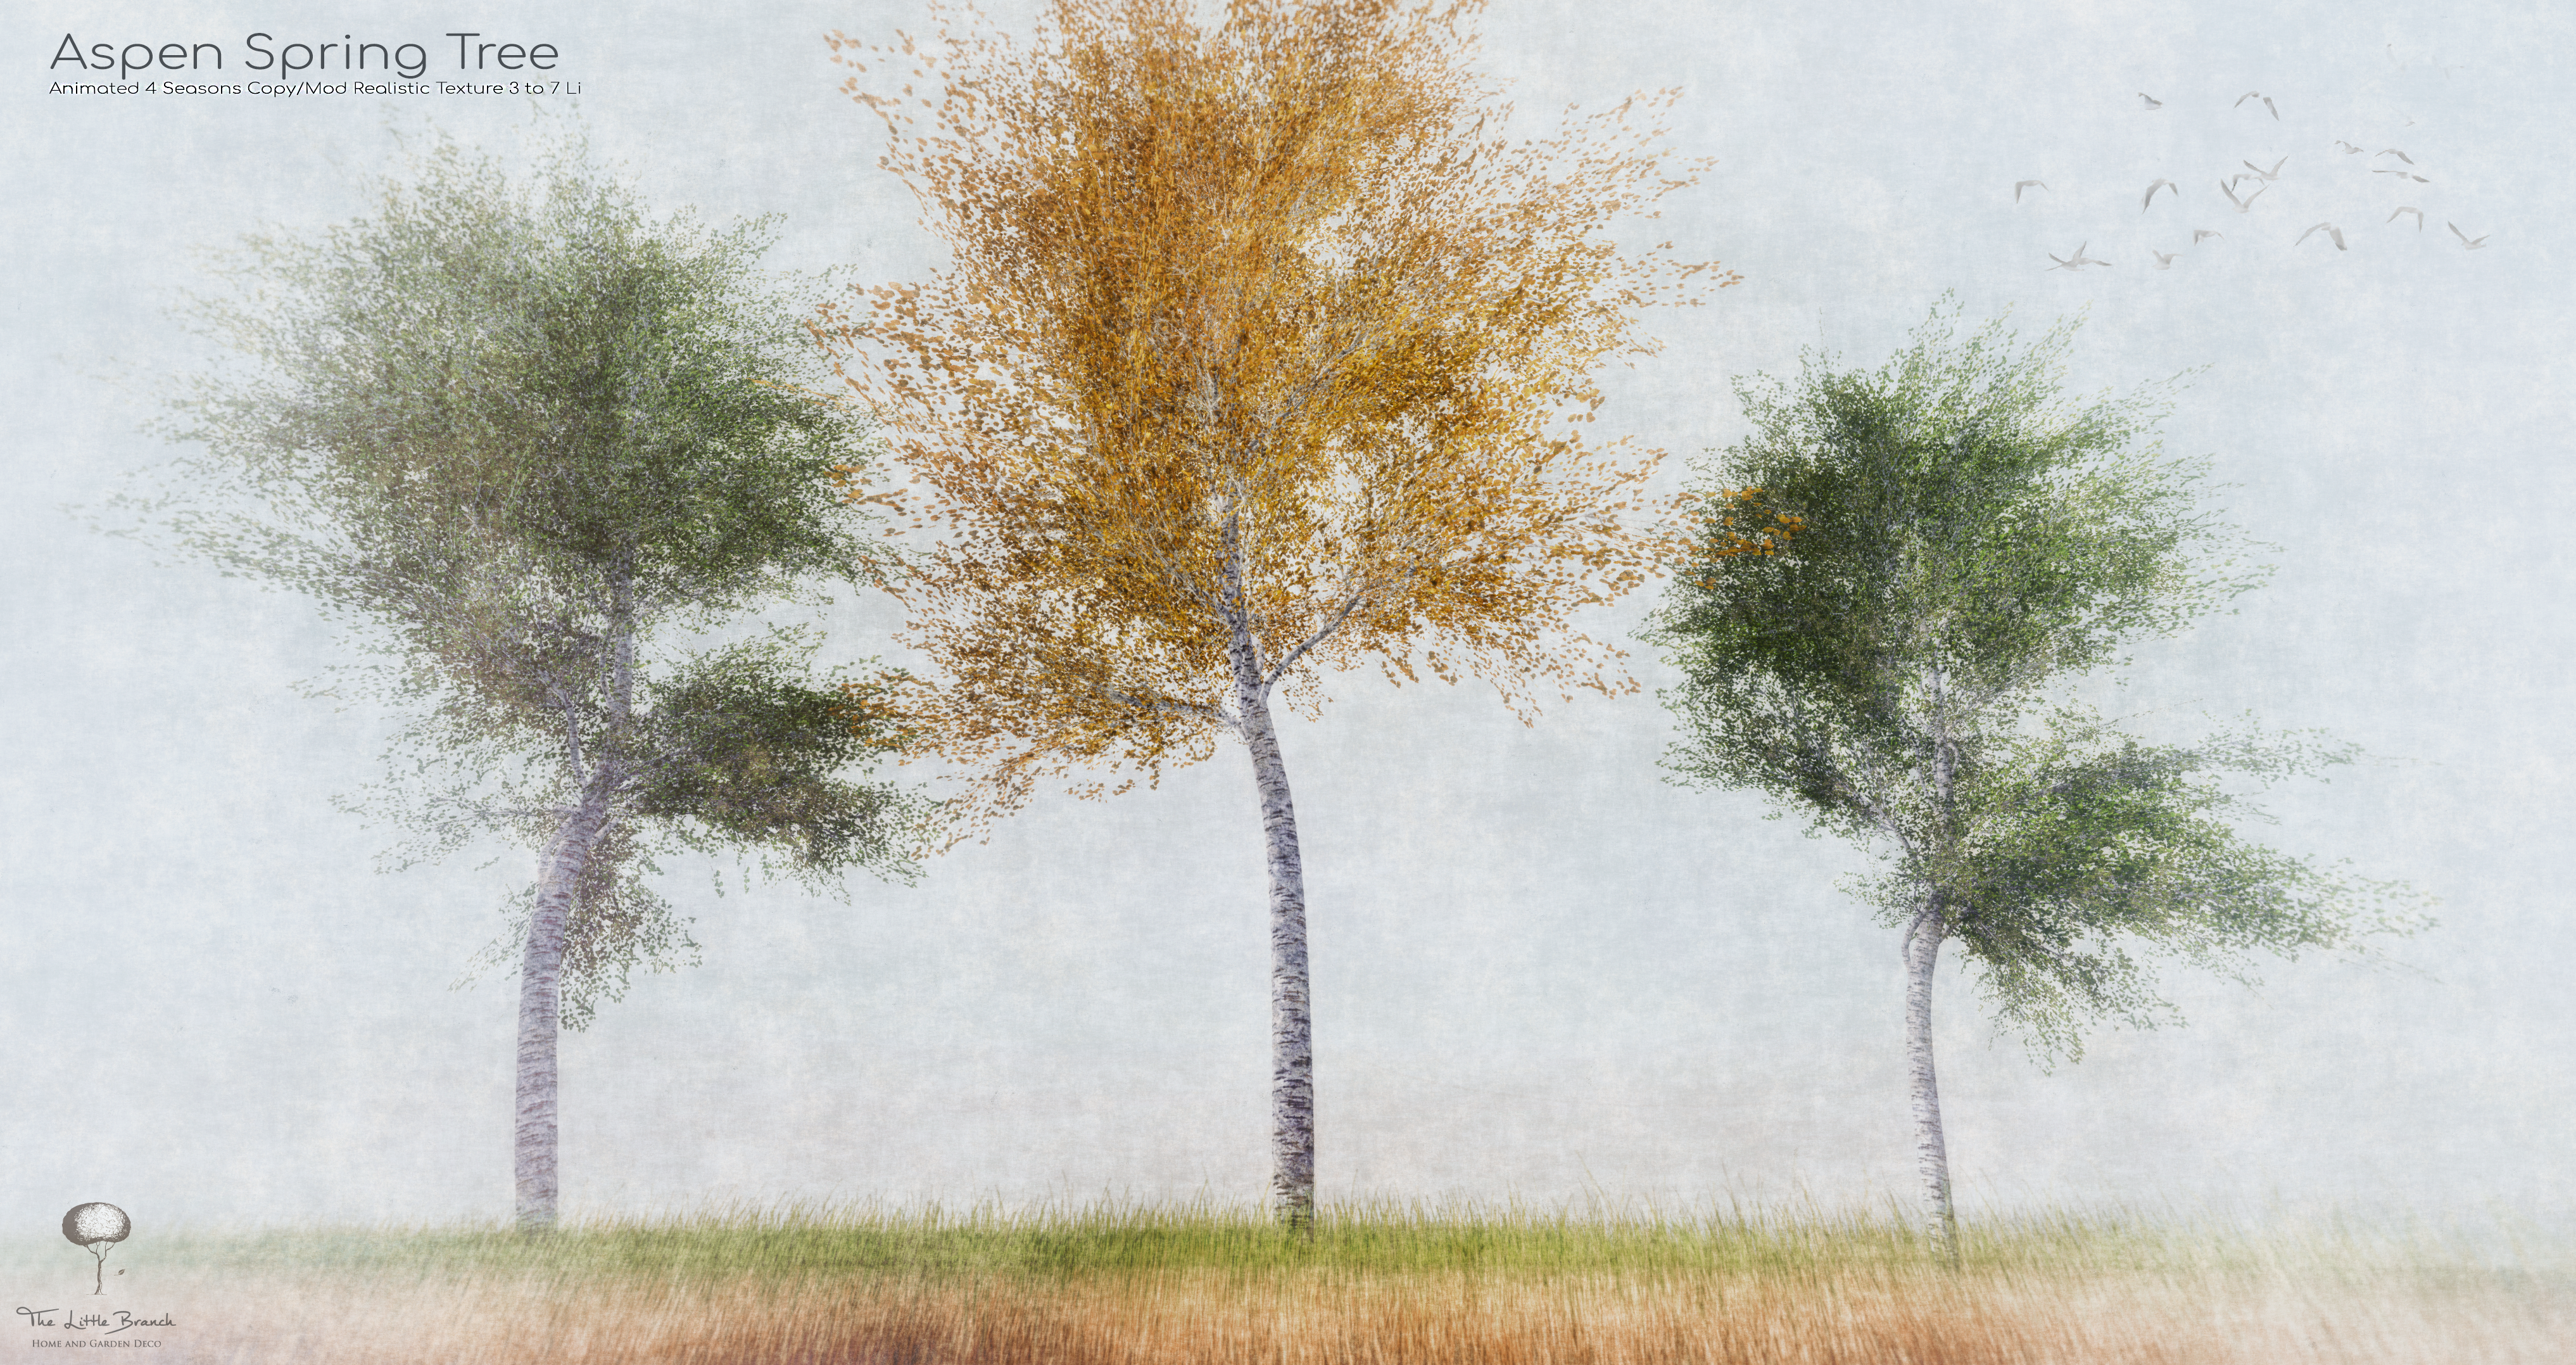 The Little Branch – Aspen Spring Tree